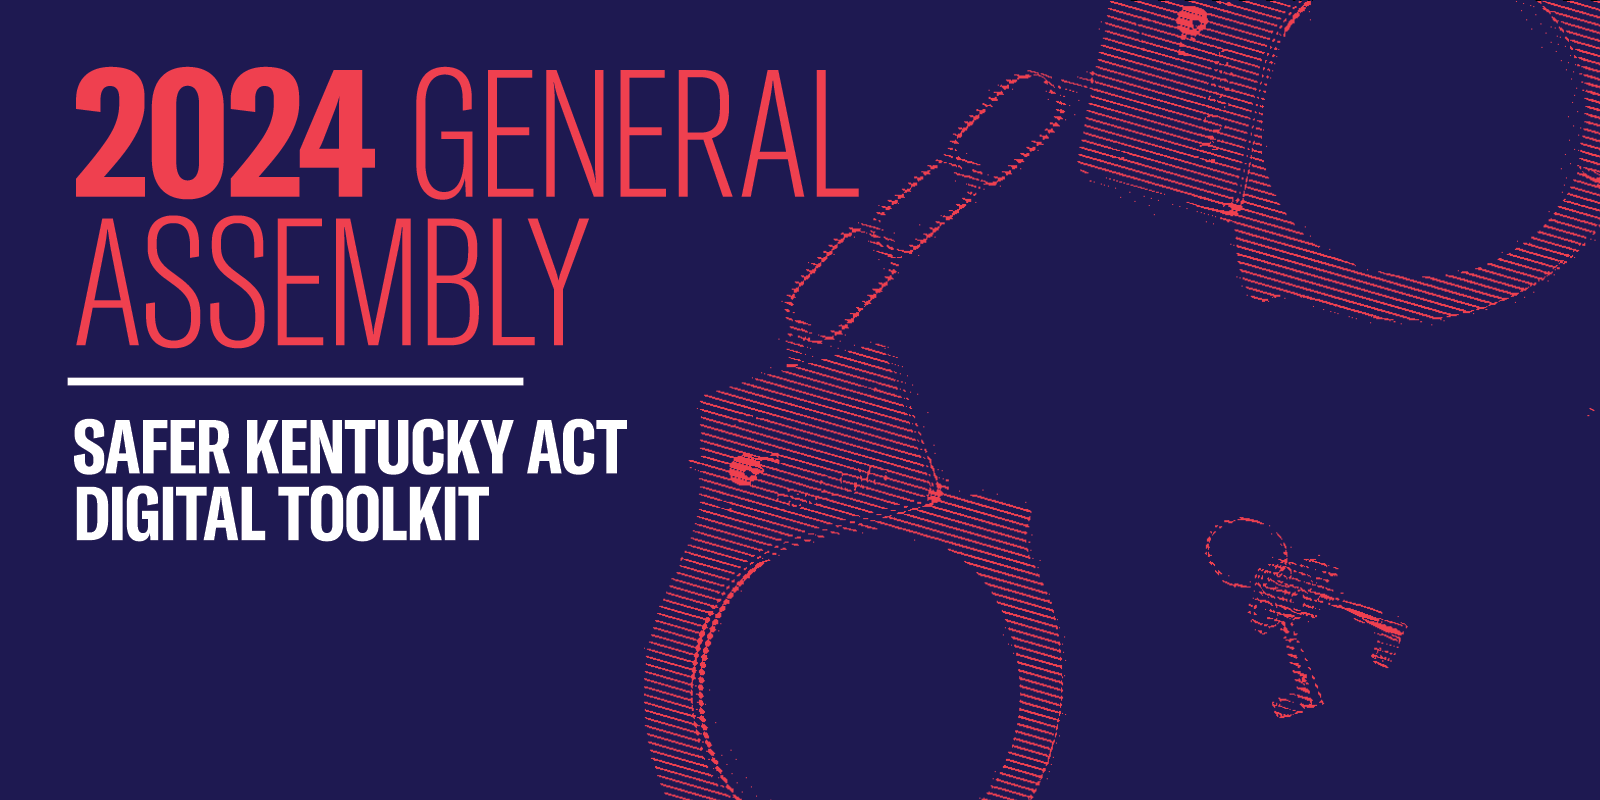 Safer Kentucky Act Digital Toolkit